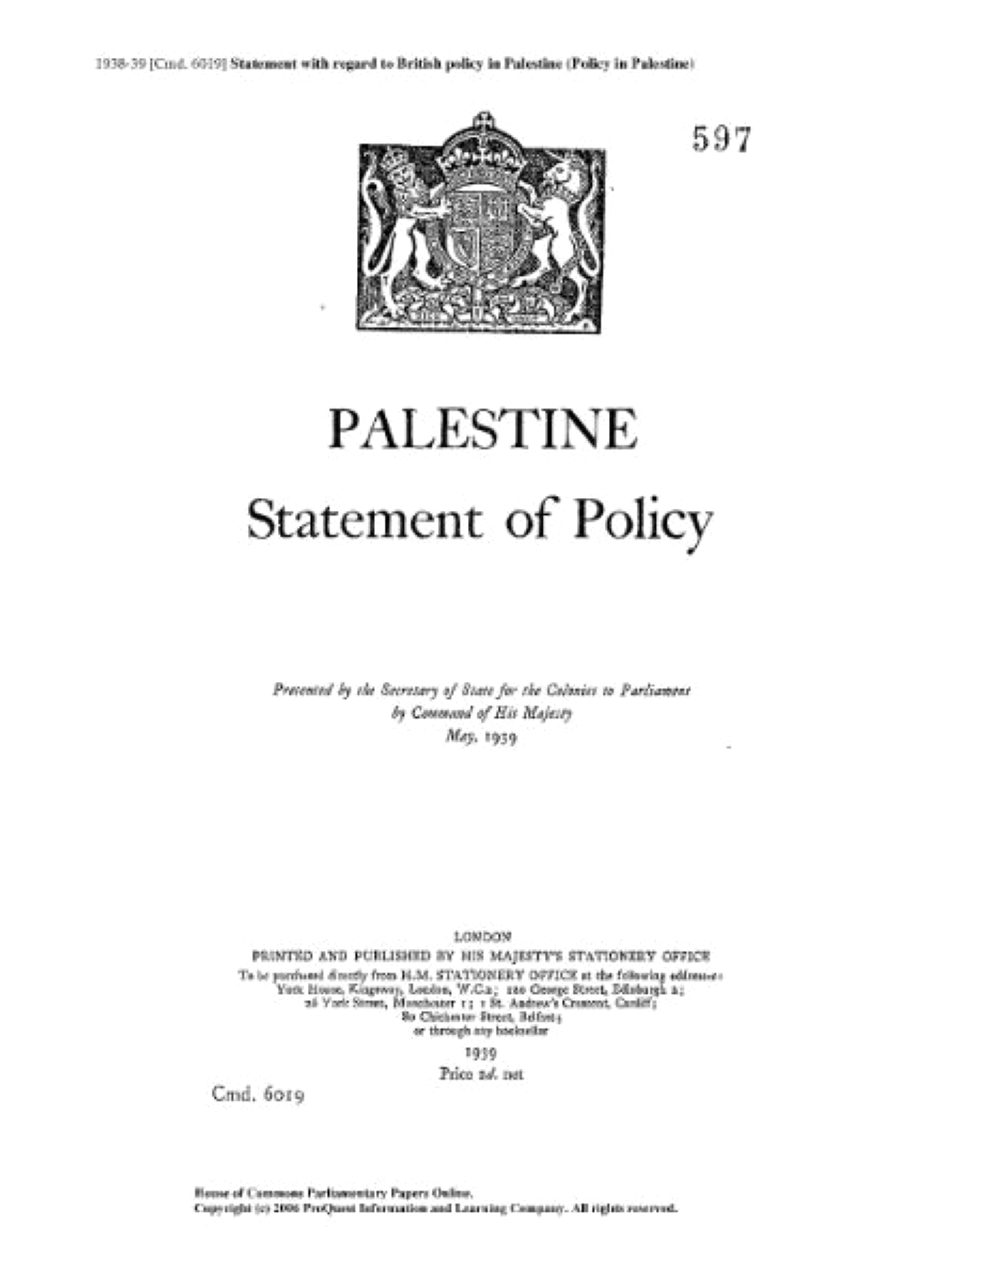 الصورة : 1939 بريطانيا تصدر الكتاب الأبيض لإقامة دولة تضم العرب واليهود في فلسطين